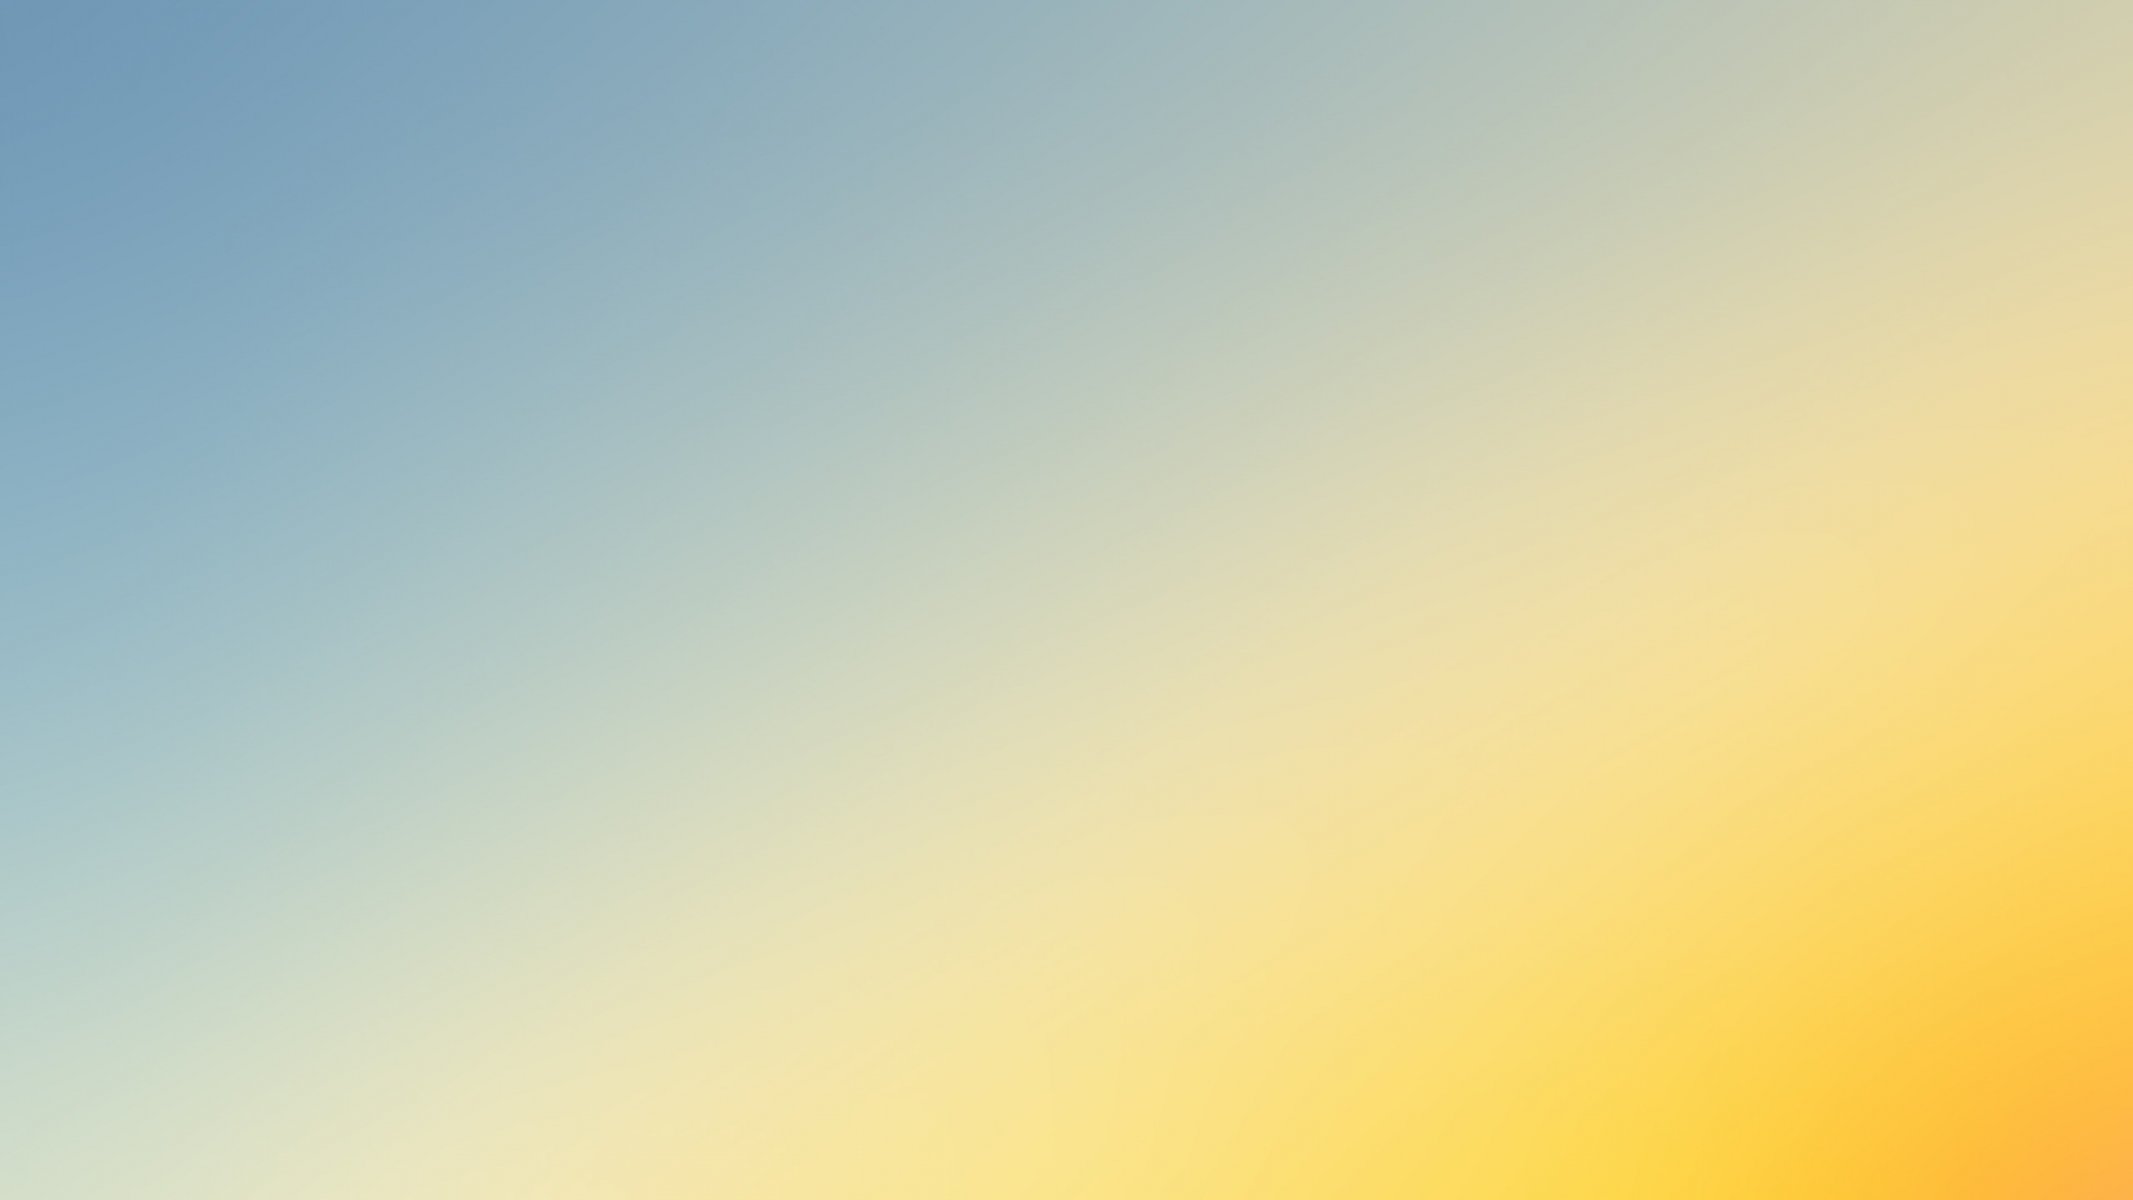 Пастельный градиент серо-голубой переходящий в сочно желтый оттенок | Обои  для телефона